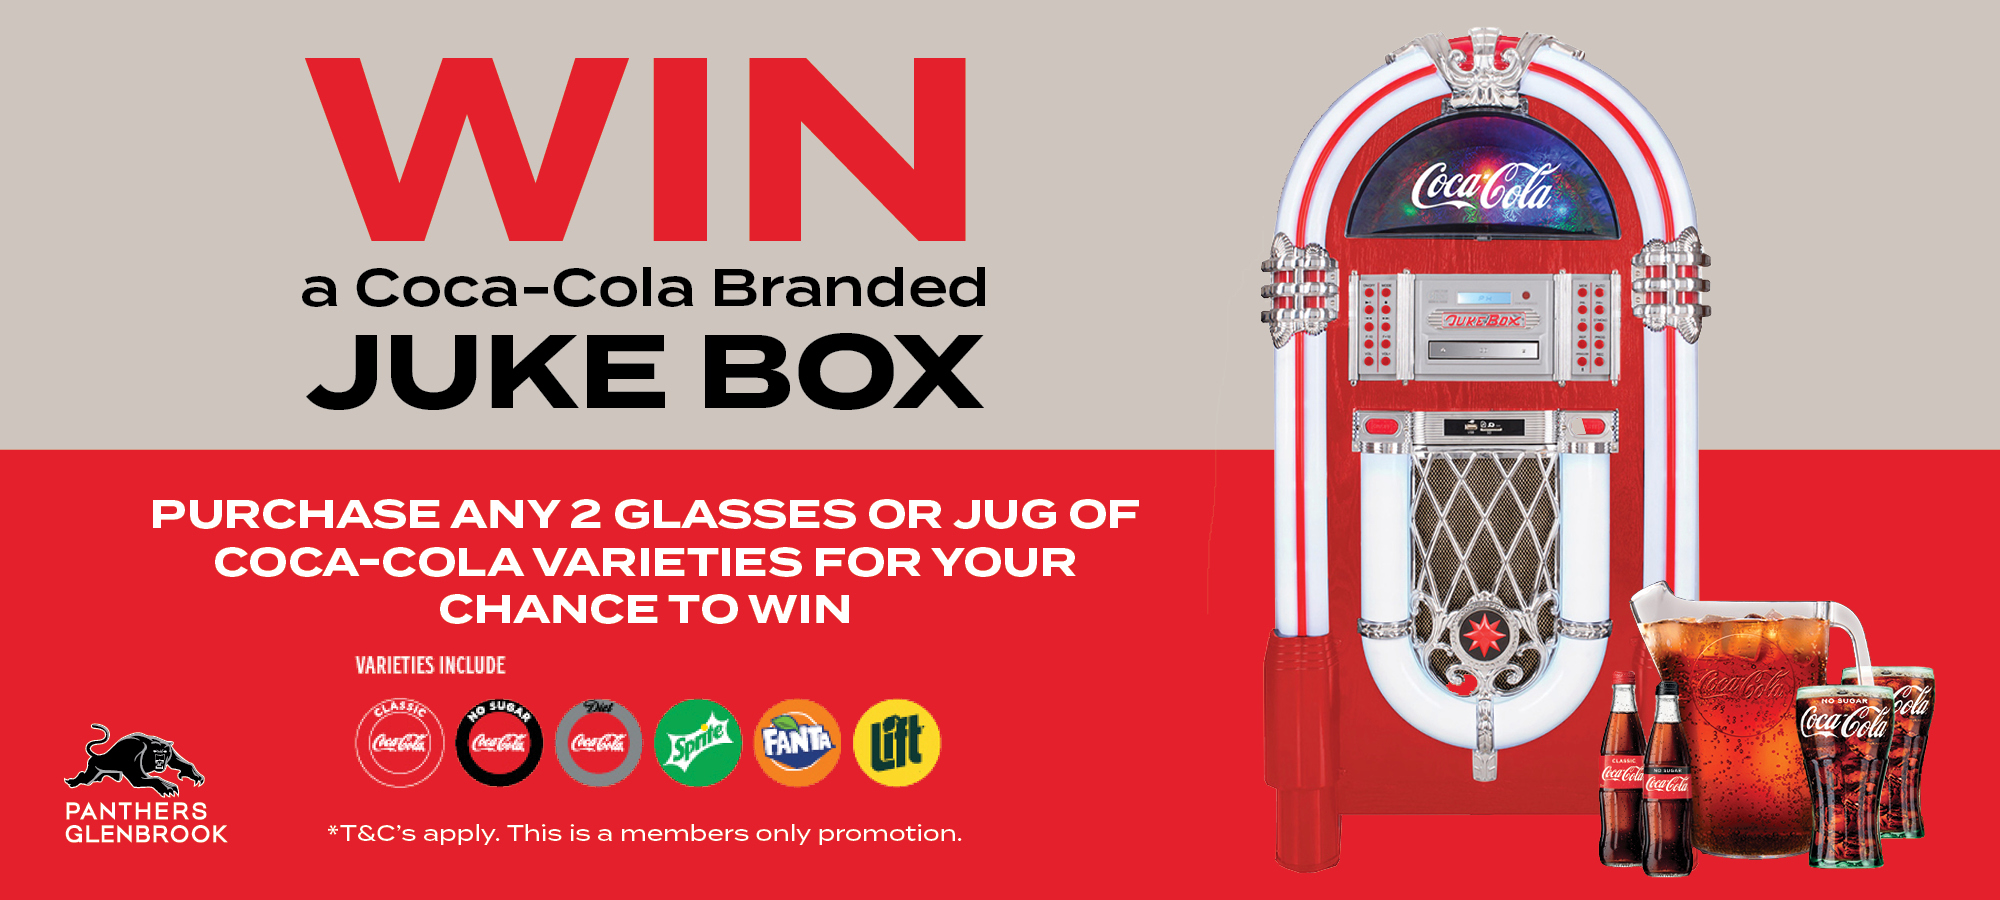 Win a Coca-Cola Juke Box!